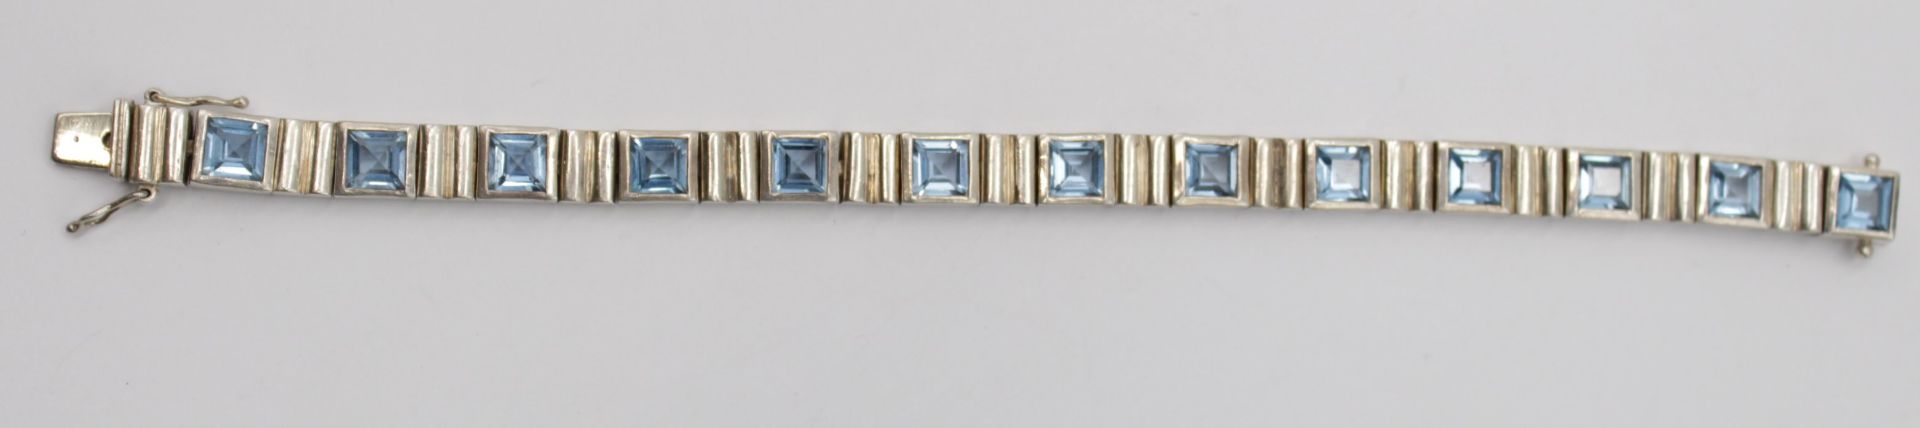 Armband, 925er Silber, hellblaue Steine (Aquamarine?), ca. 35,7gr., L-20cm. - Bild 2 aus 4